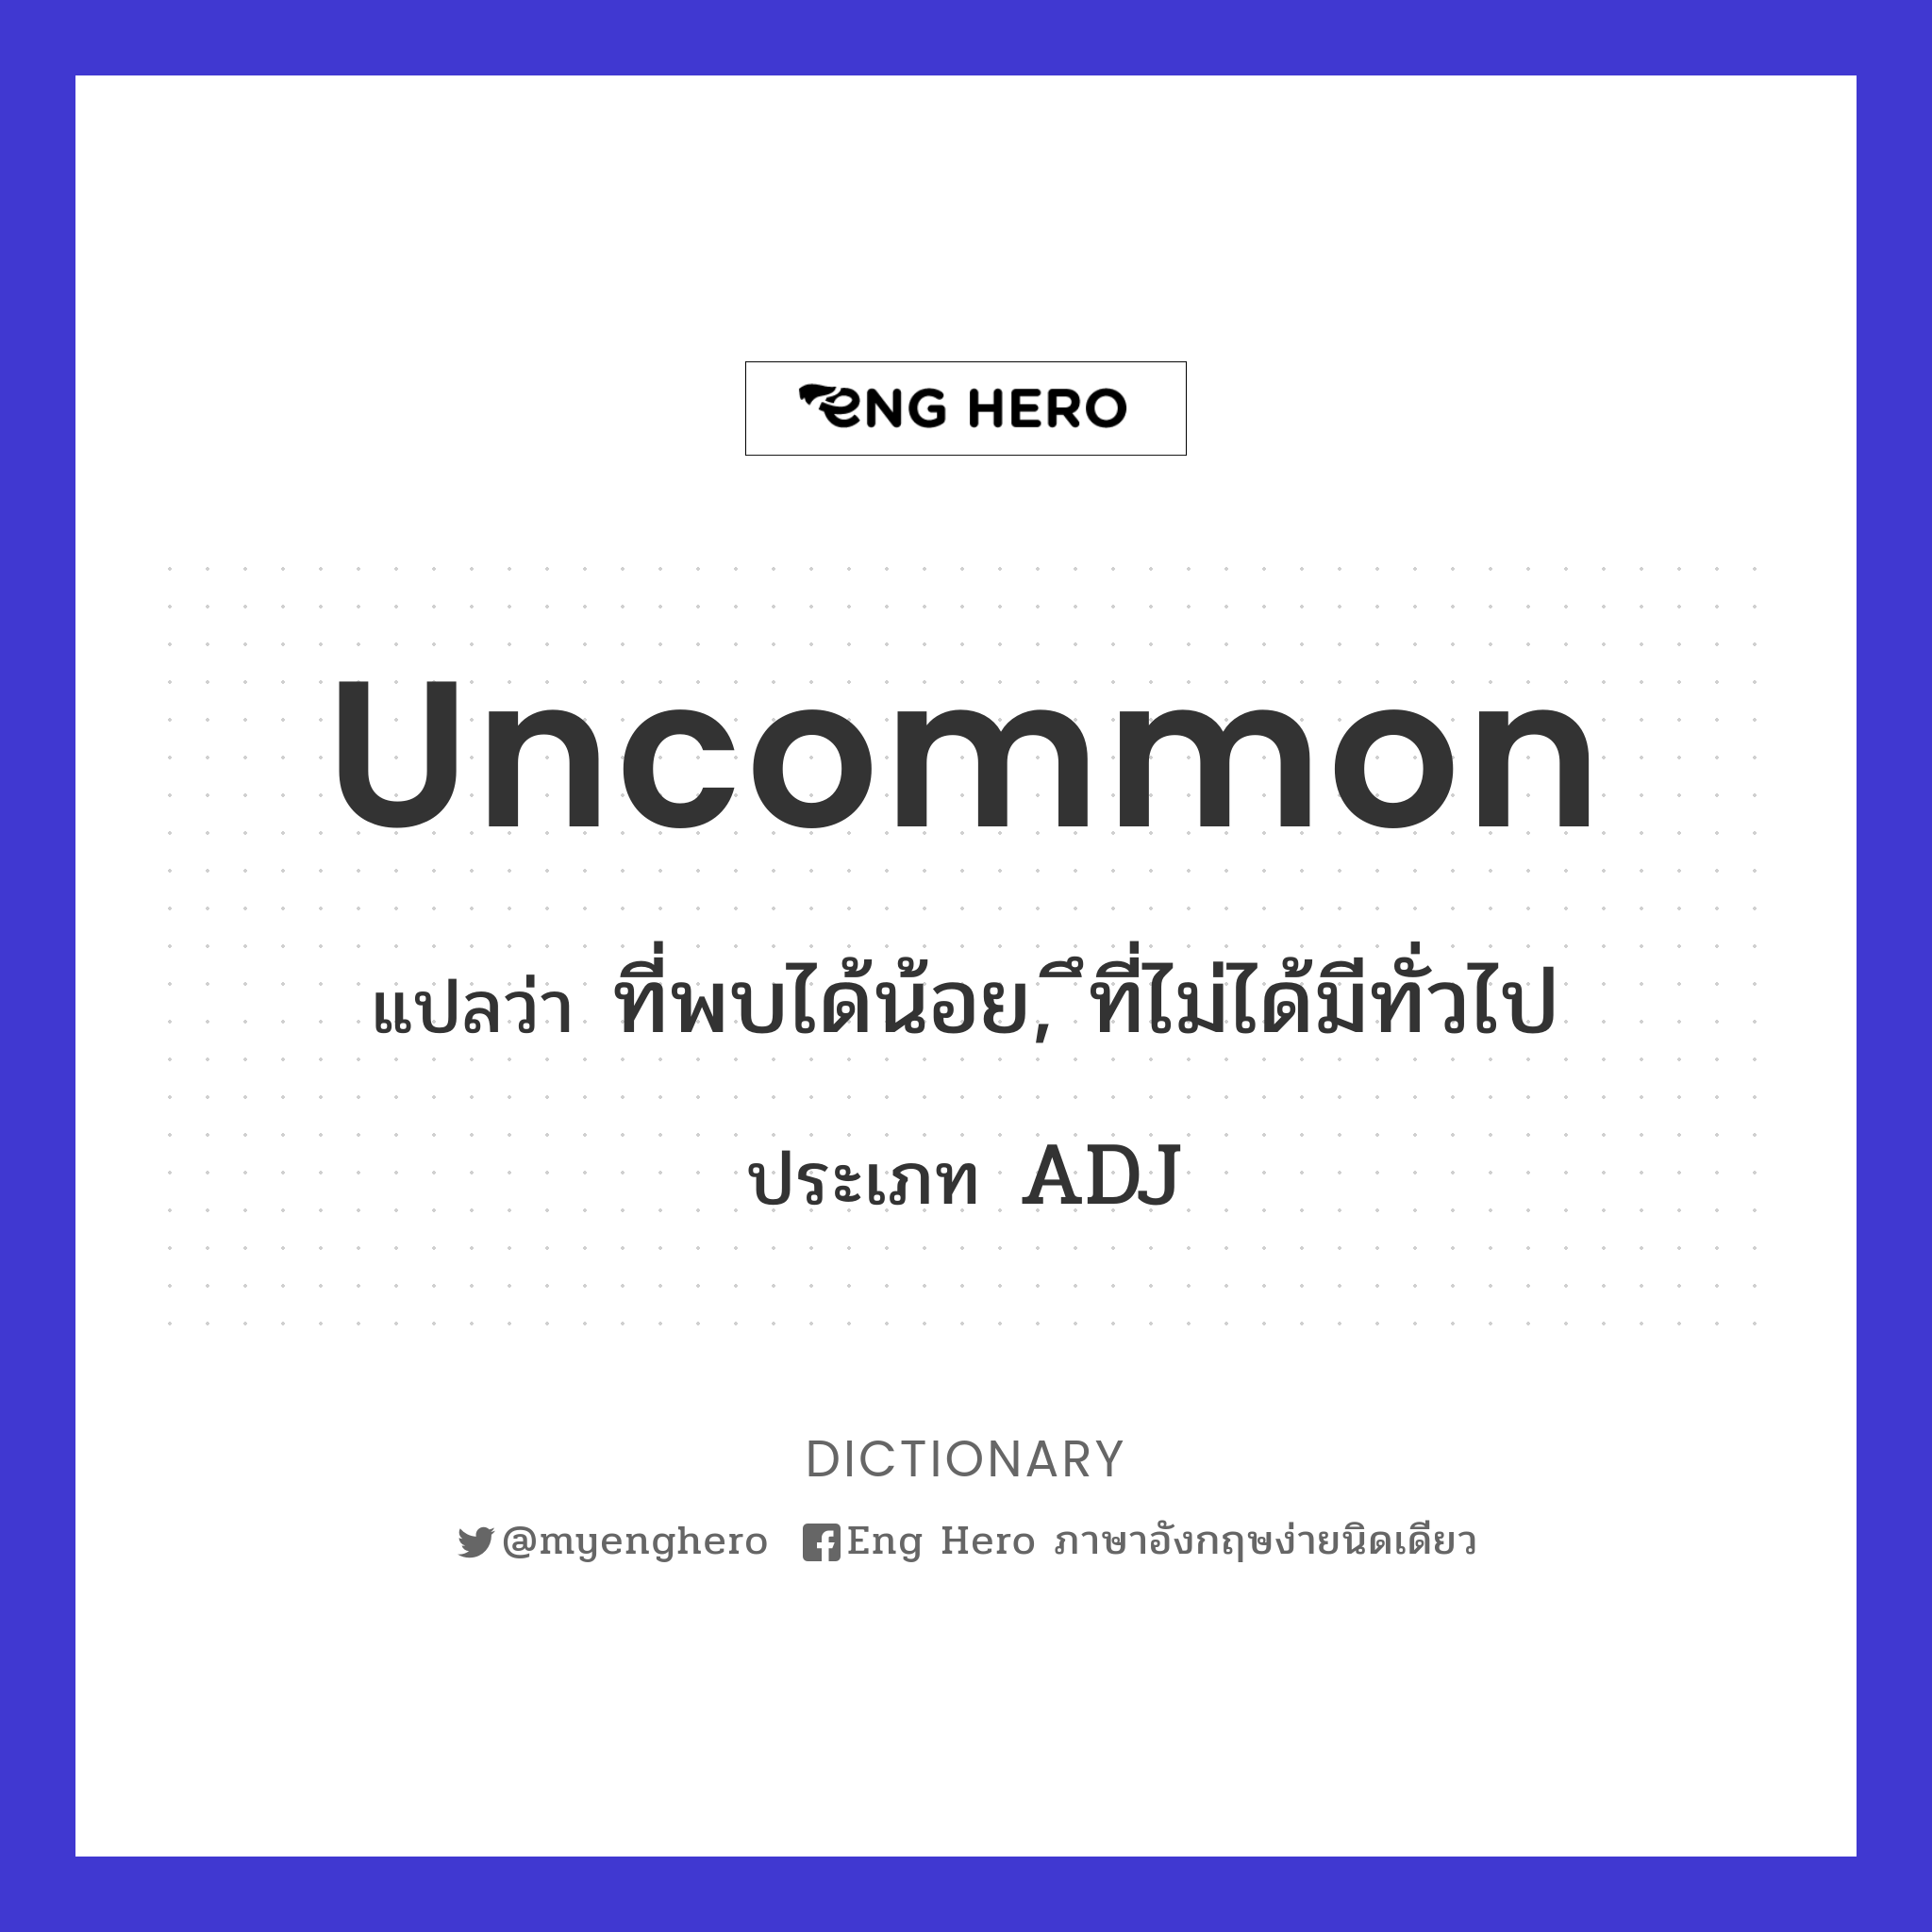 uncommon